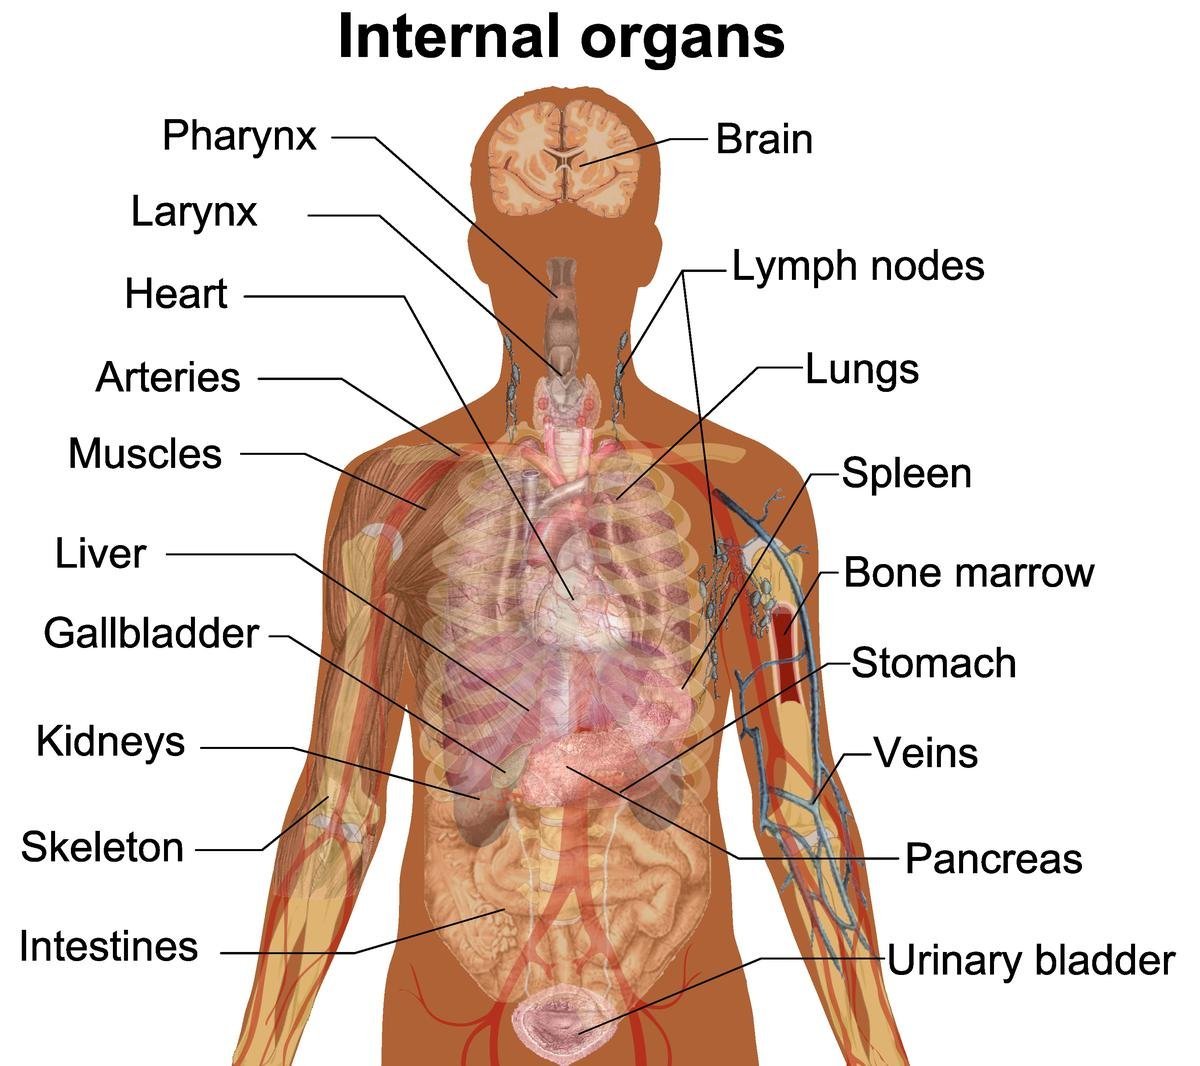 Human body Parts and Internal Organs